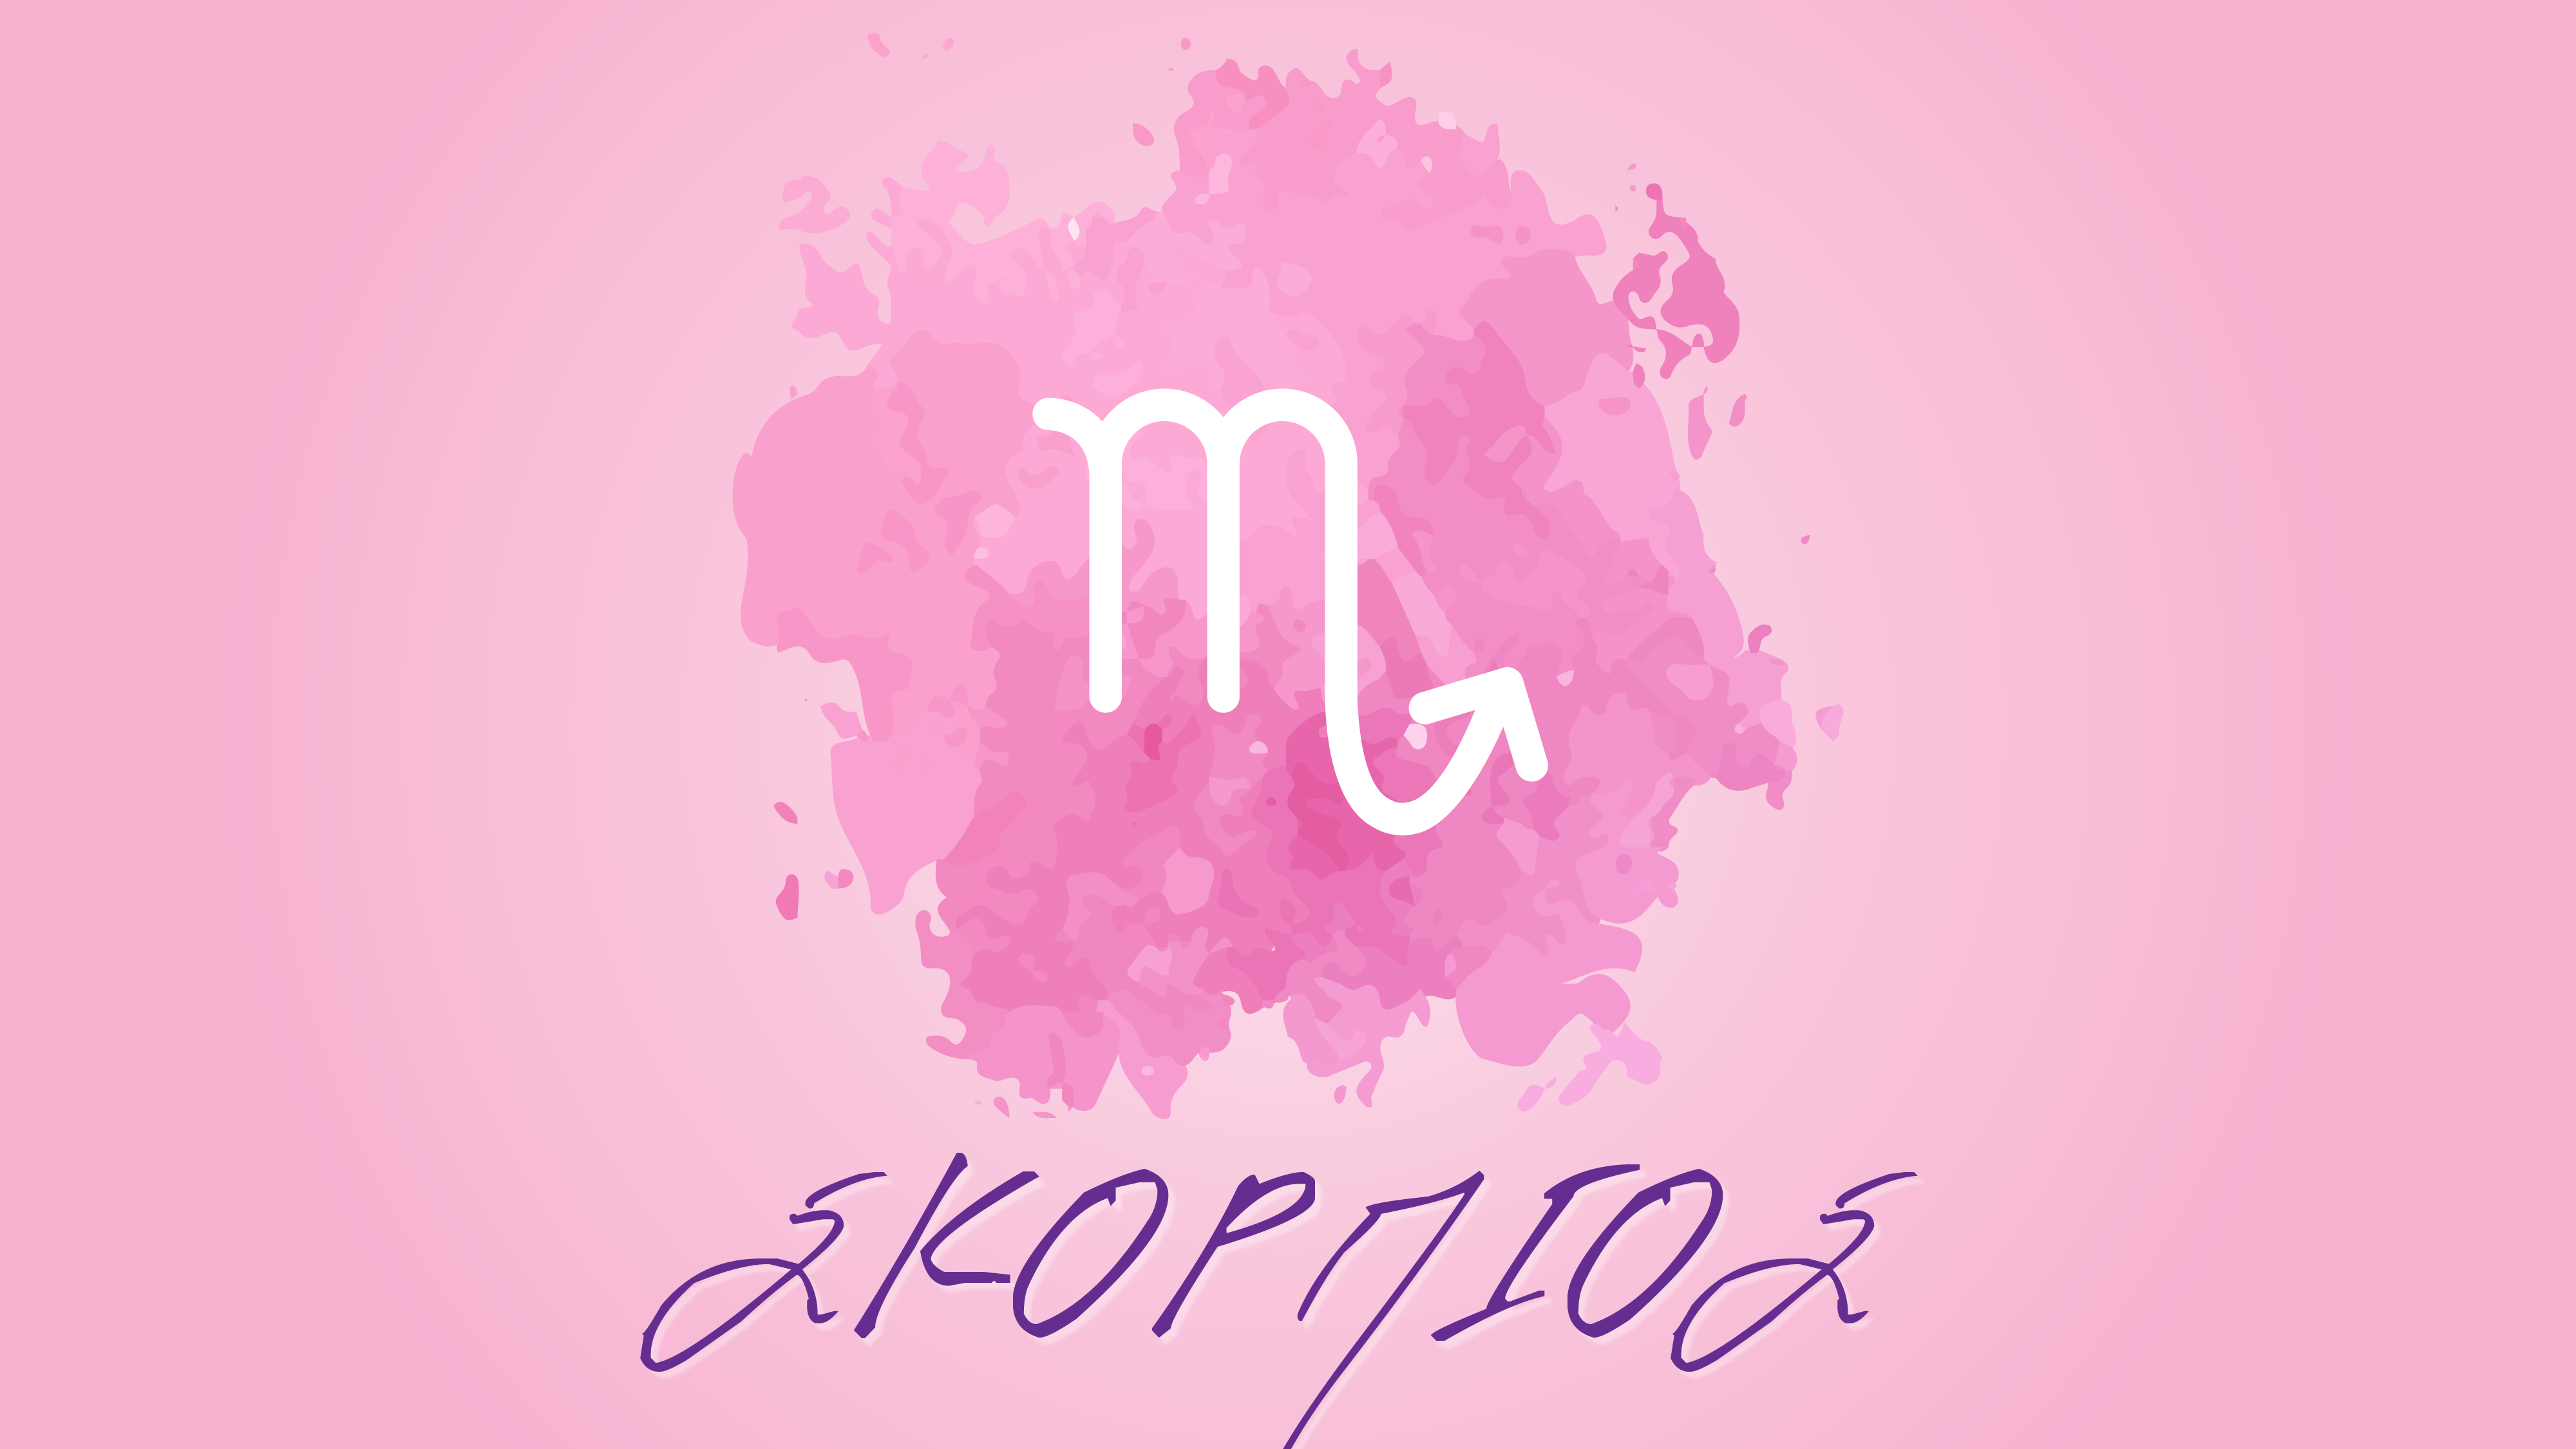 Σκορπιός – Μηνιαίες αστρολογικές προβλέψεις Οκτωβρίου 2020